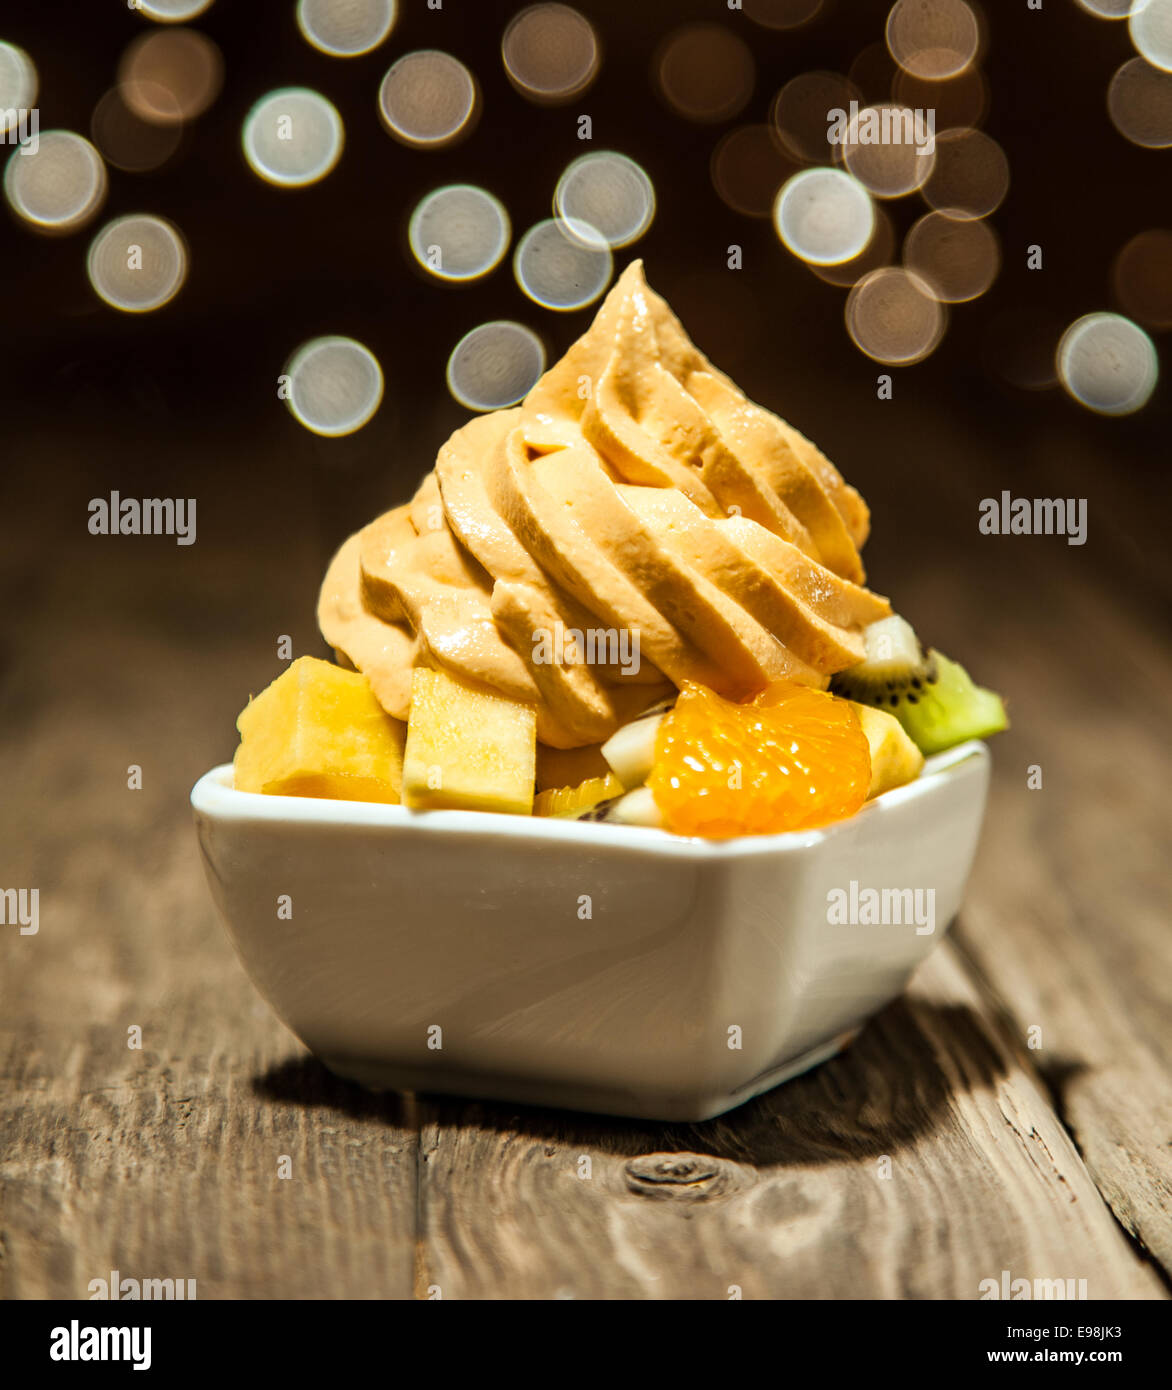 Makro Munde gelbe gefrorenen Joghurt auf verschiedene FRUCHTSCHEIBEN auf weiße Schüssel auf Holztisch gelegt. Stockfoto